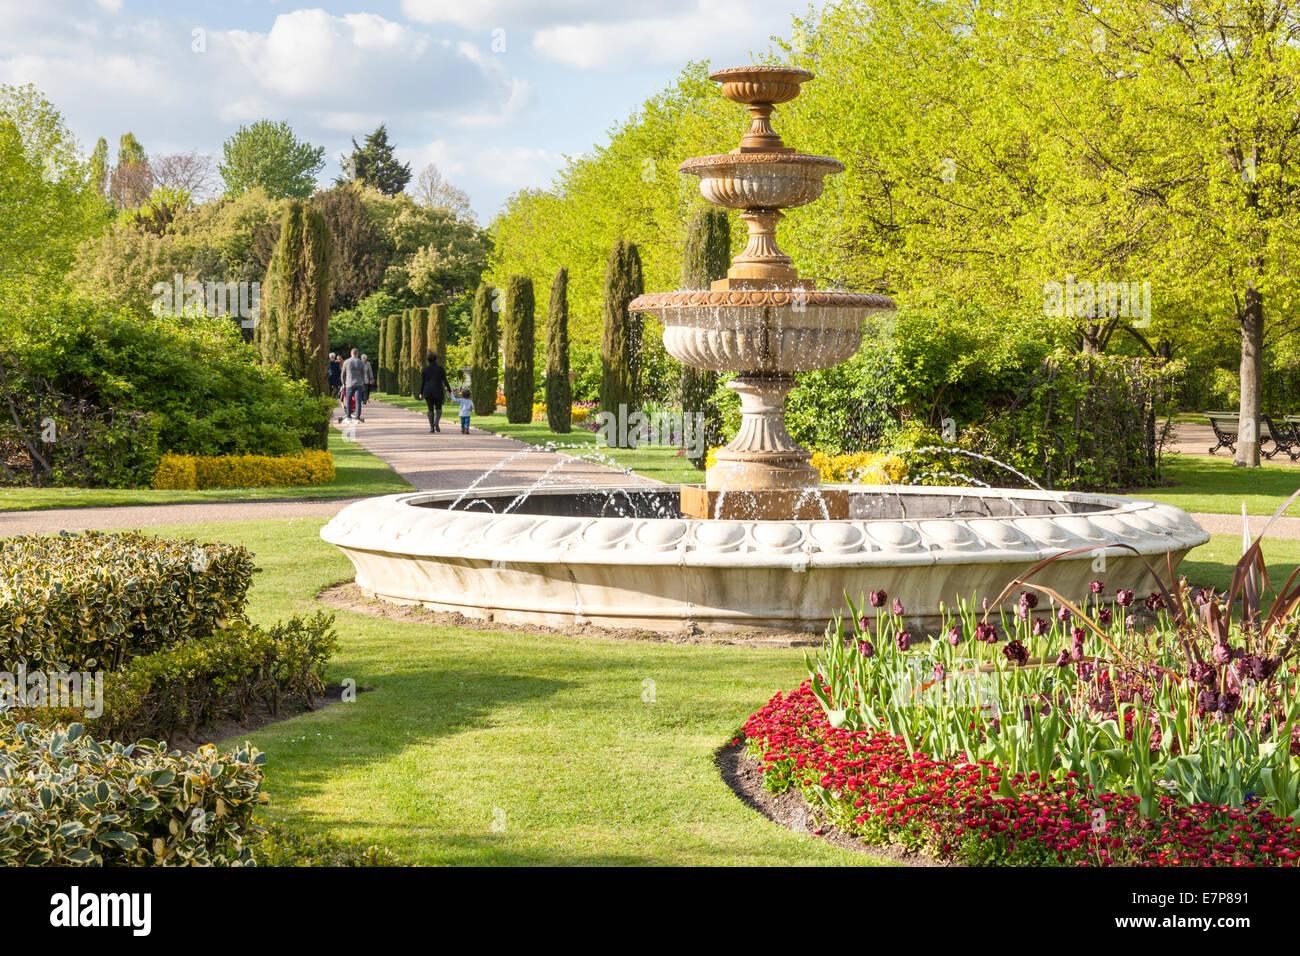 Fontaine, arbres et fleurs dans l'Avenue Gardens at Regents Park, London, England, UK Banque D'Images